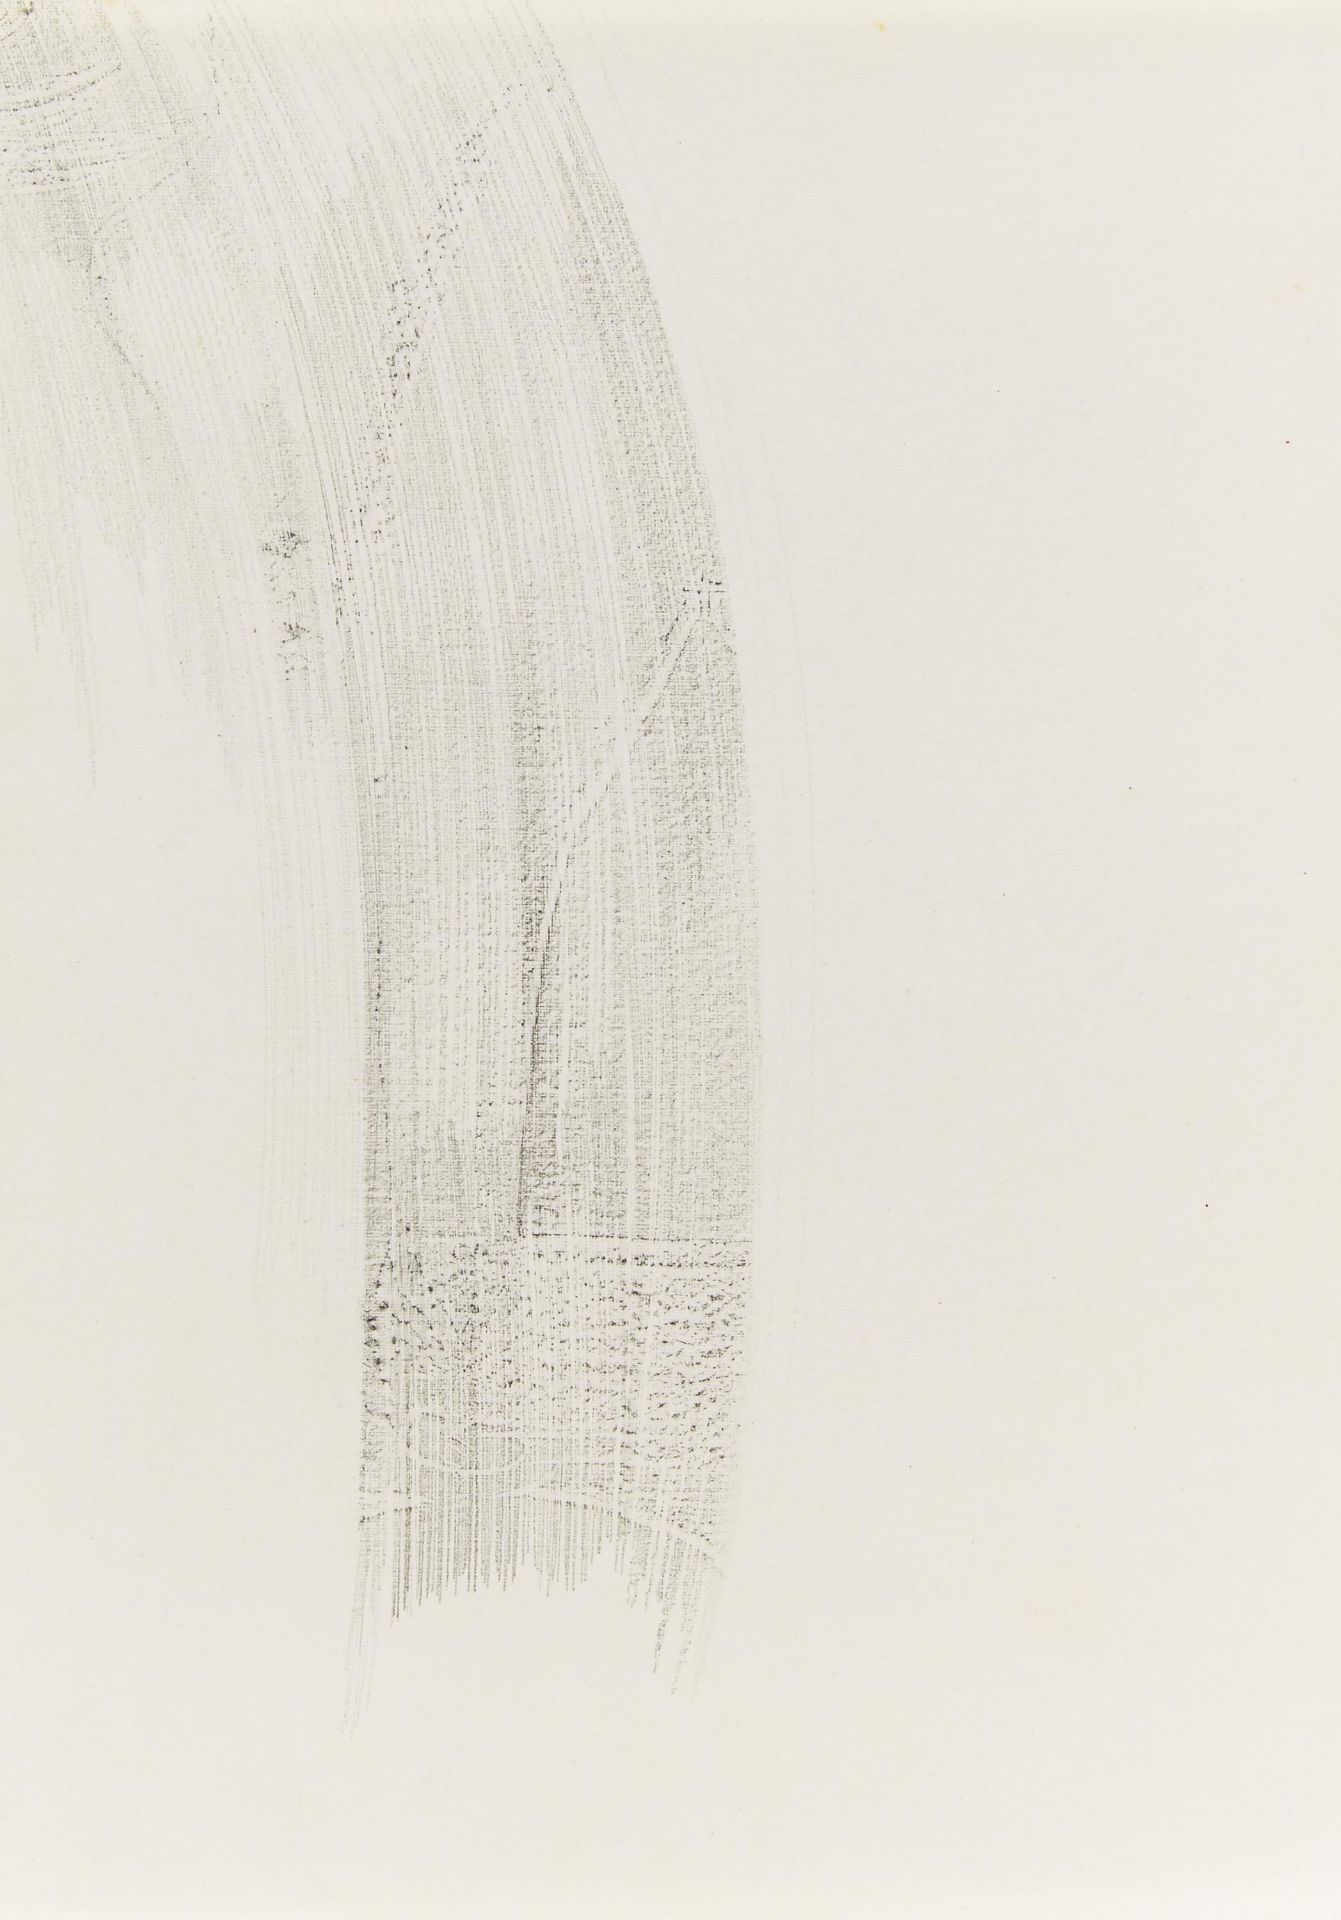 Beuys, Joseph 1921 Krefeld - 1986 Düsseldorf "Der Morgen". 1953/55. Frottage auf Papier. 29,7 x